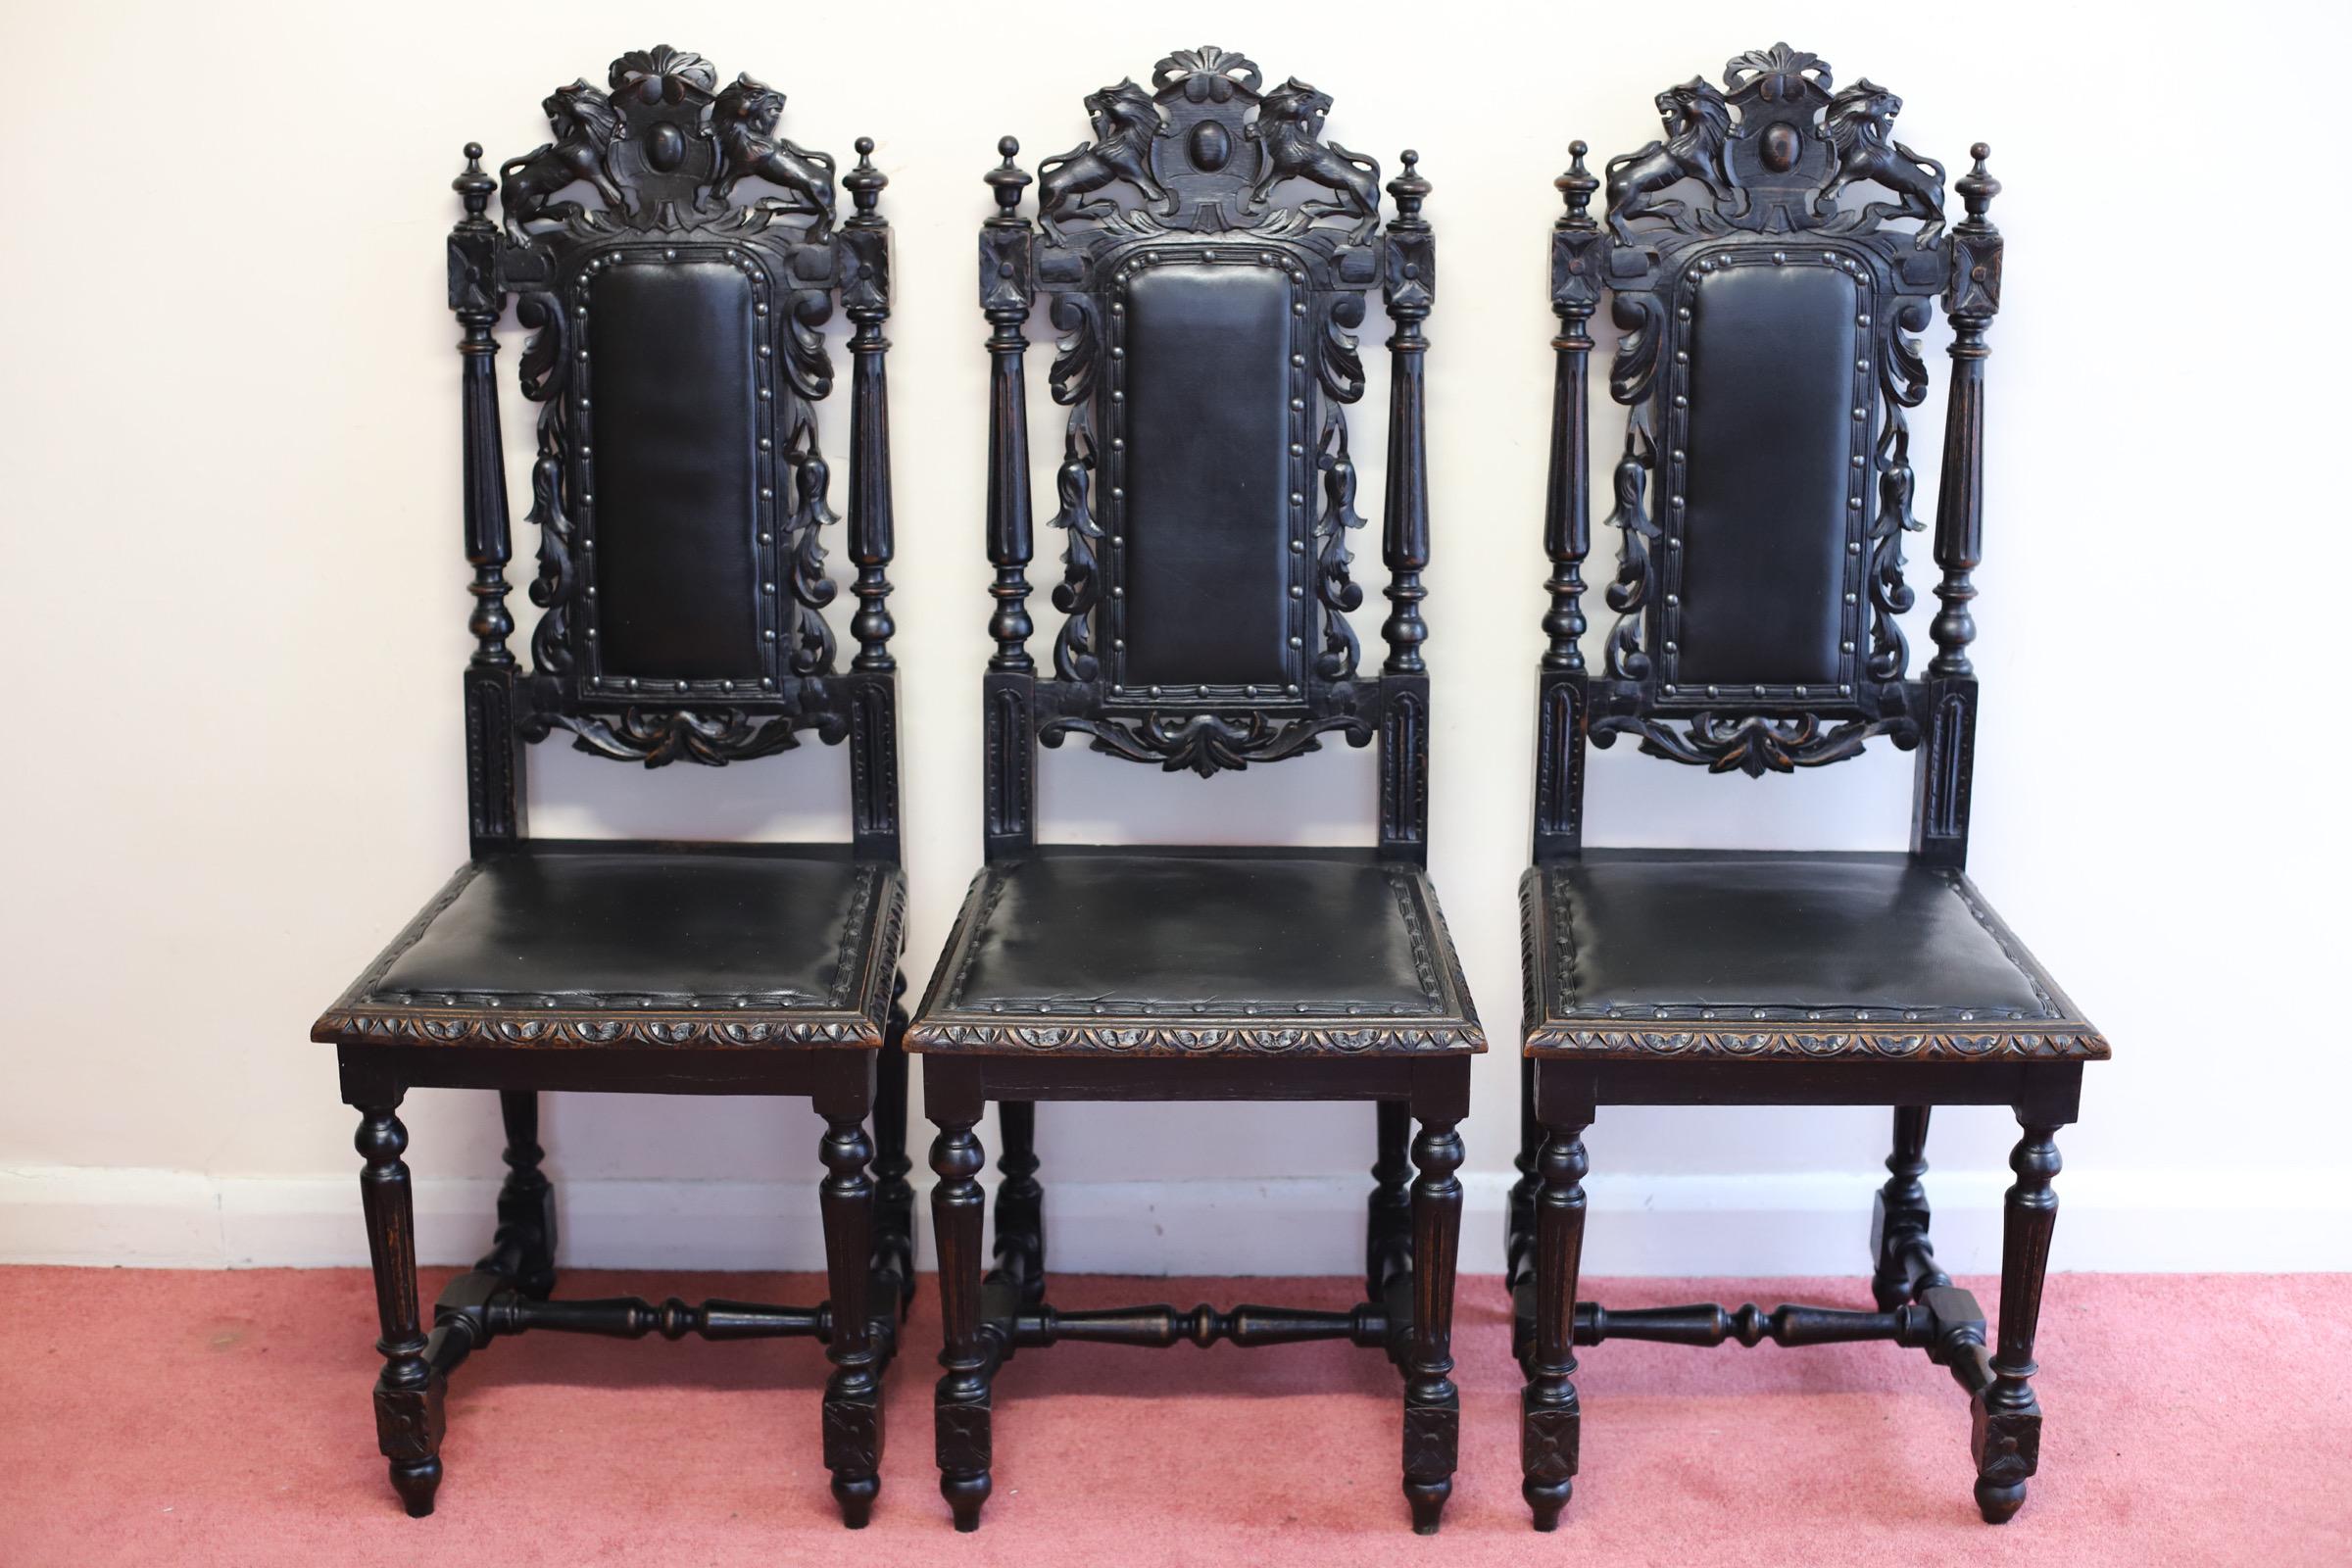 Satz von sechs handgeschnitzten Löwenterminal viktorianischen Esszimmerstühlen.
Wir freuen uns sehr, dieses atemberaubende Set von sechs frühviktorianischen, handgeschnitzten Eichenstühlen aus dem jakobinischen Herrenhaus zum Verkauf anzubieten.
Ein